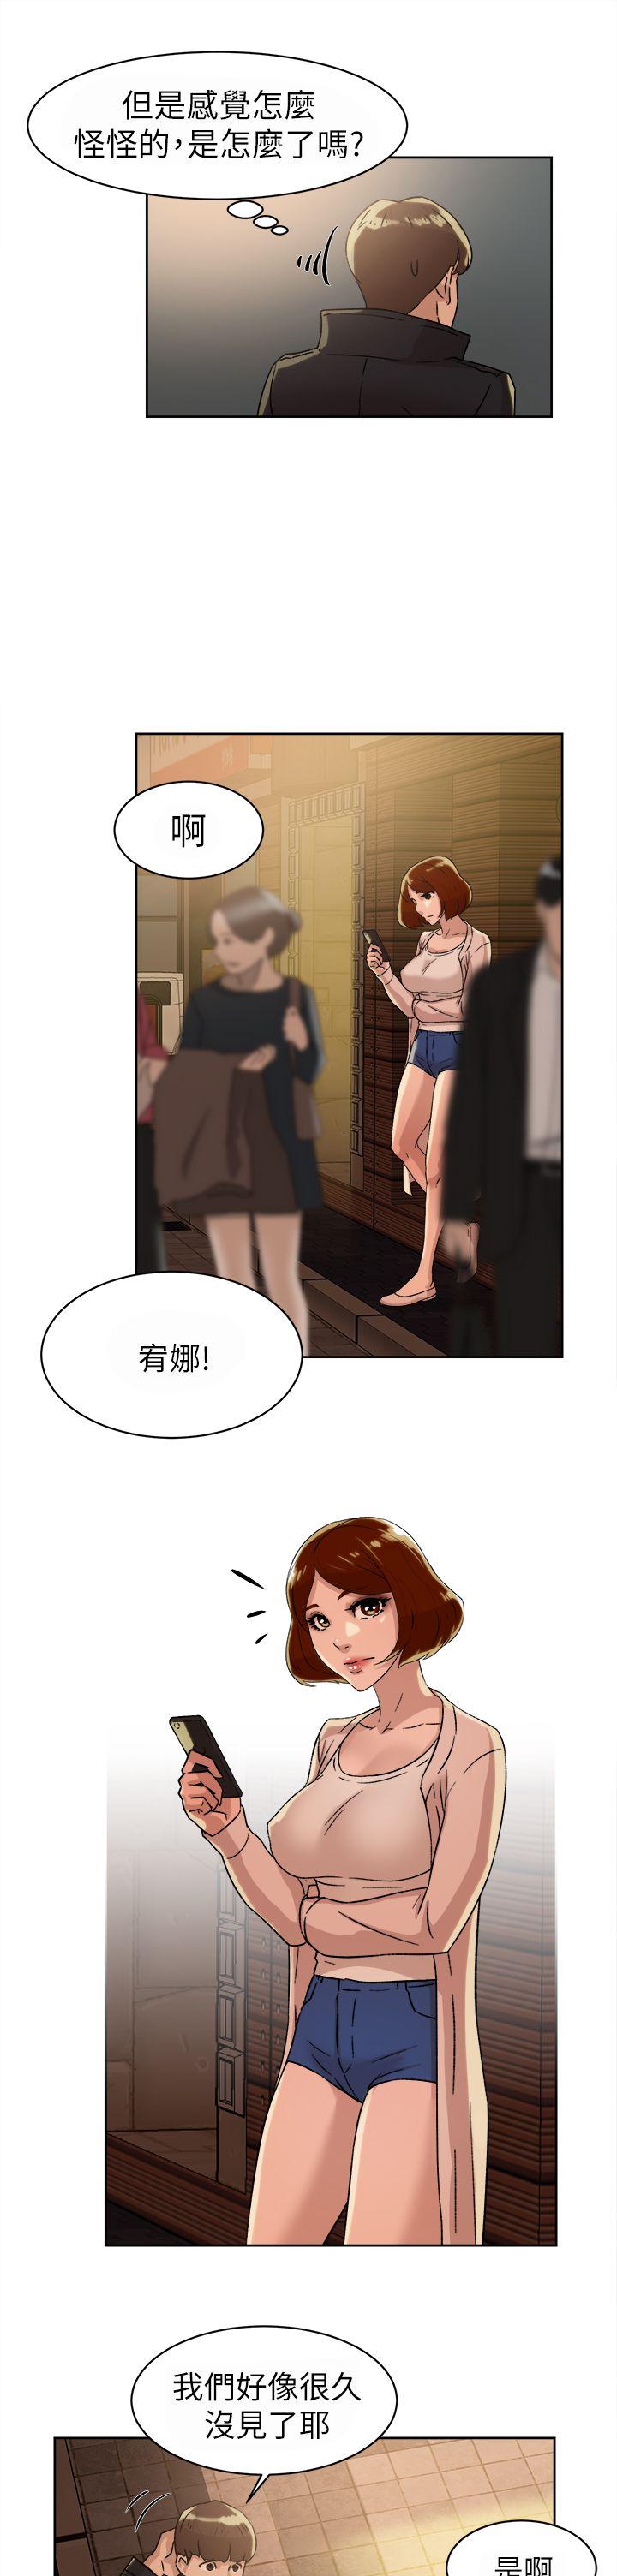 韩国污漫画 她的高跟鞋(無刪減) 第42话 3